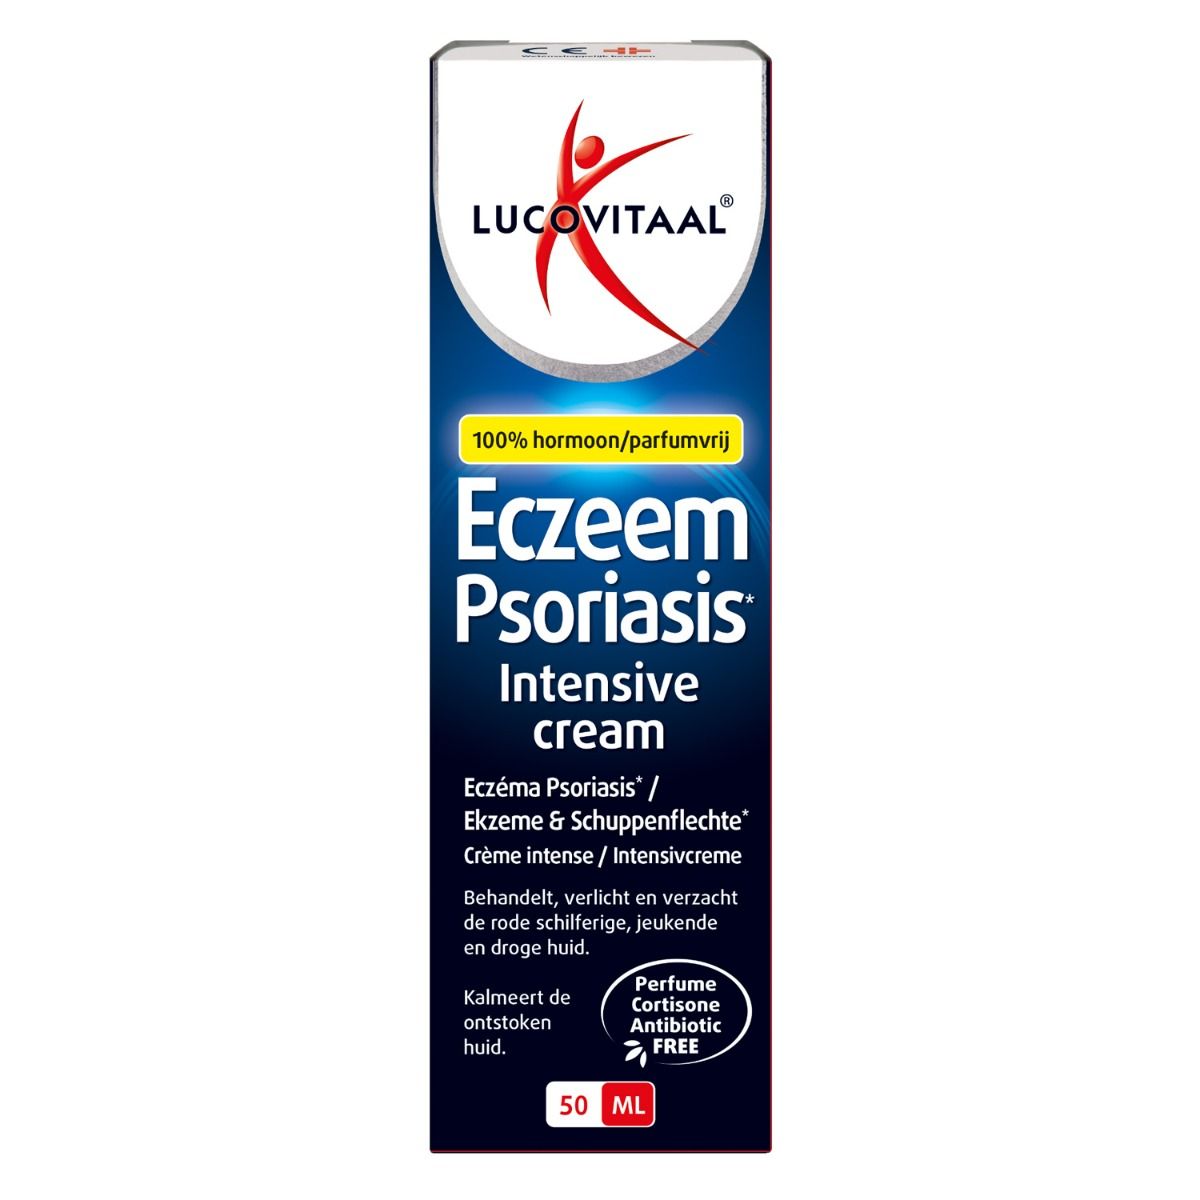 hebzuchtig oor Onbeleefd Eczeem Psoriasis Intensive Cream - Lucovitaal: Krachtig & Goedkoop!